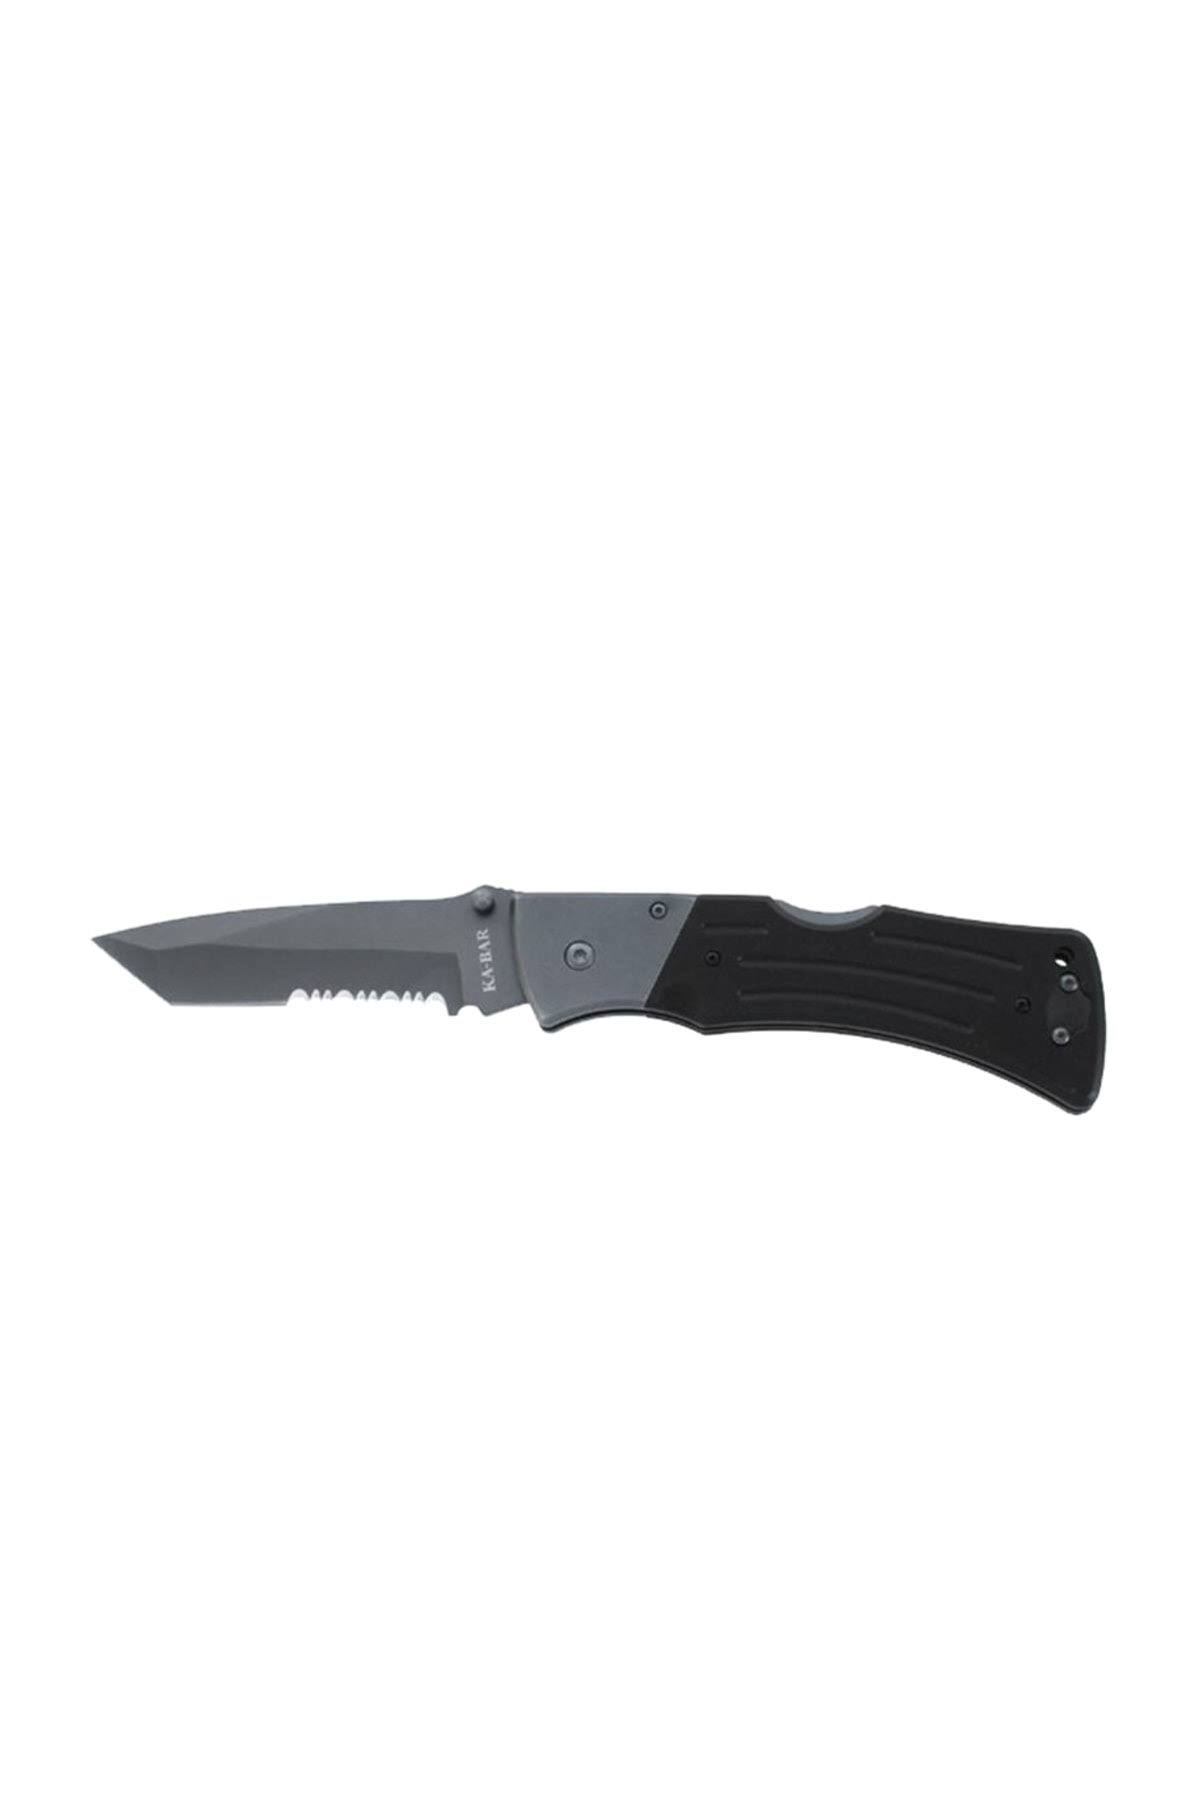 KA-BAR Mule Folder 3065 Cutting Knife